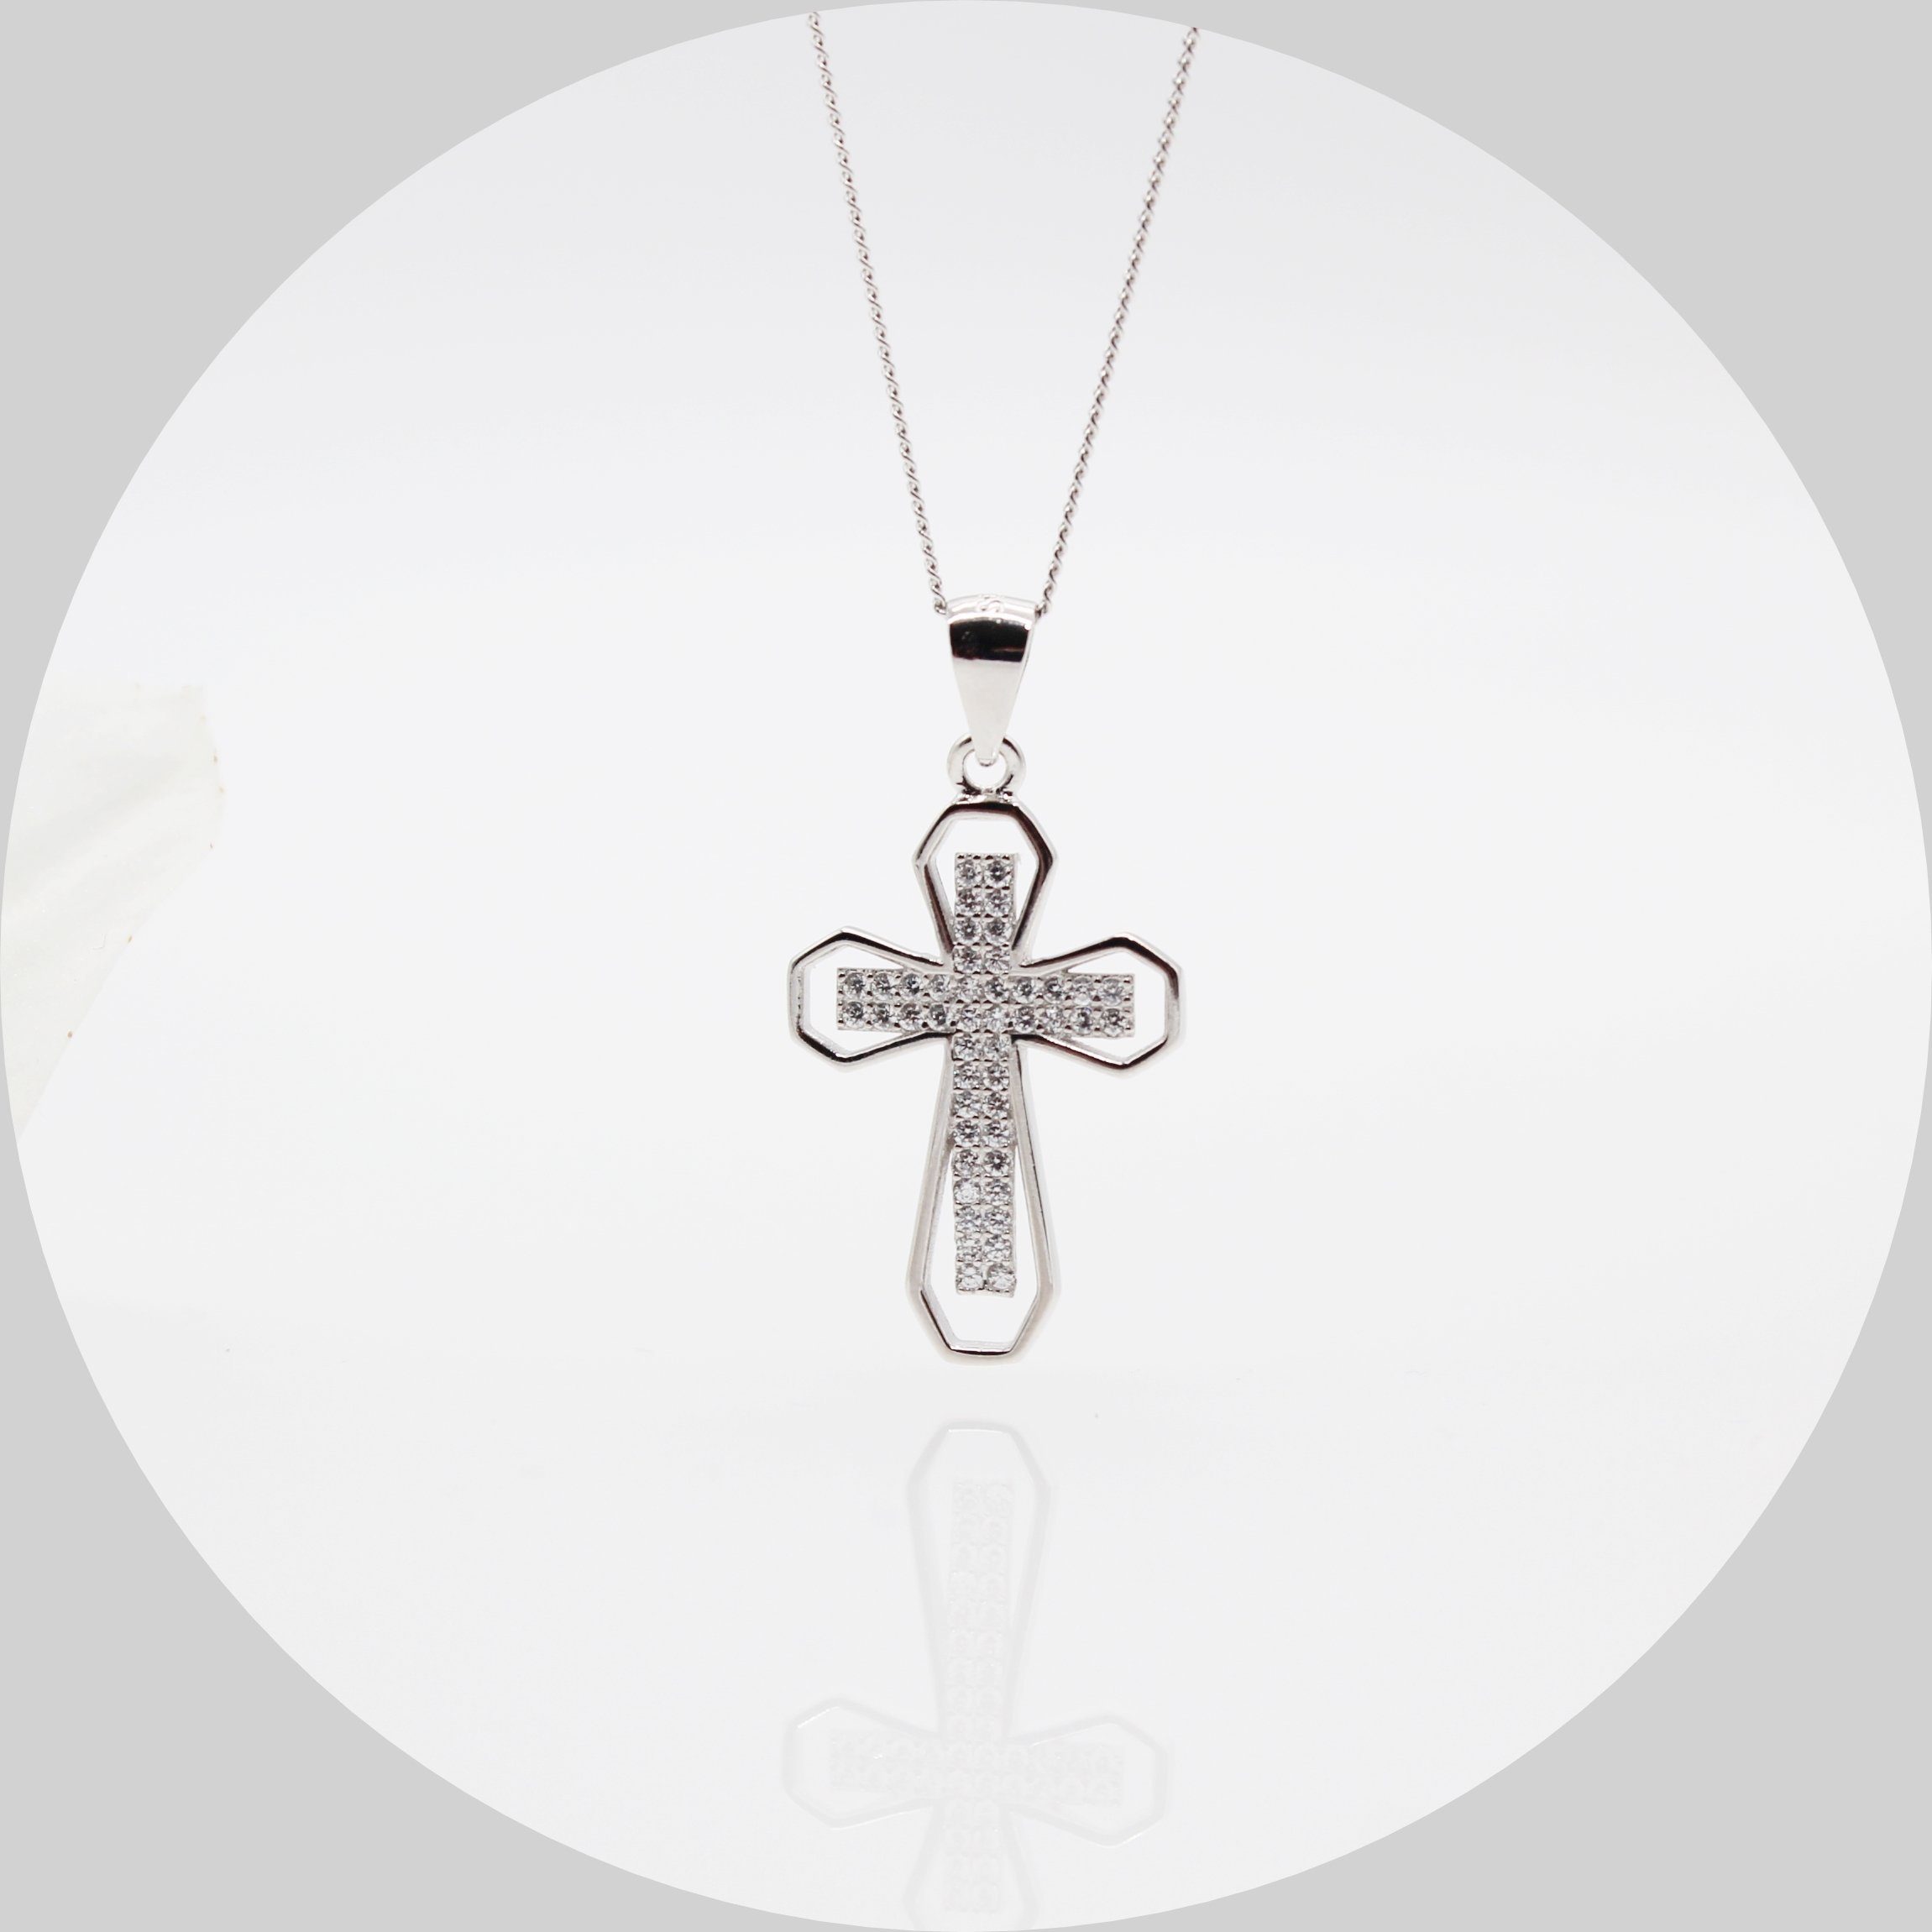 ELLAWIL Silberkette Damen Kette mit Kreuzanhänger Halskette Schmuck Kreuzkette (Kettenlänge 50 cm, Sterling Silber 925), inklusive Geschenkschachtel